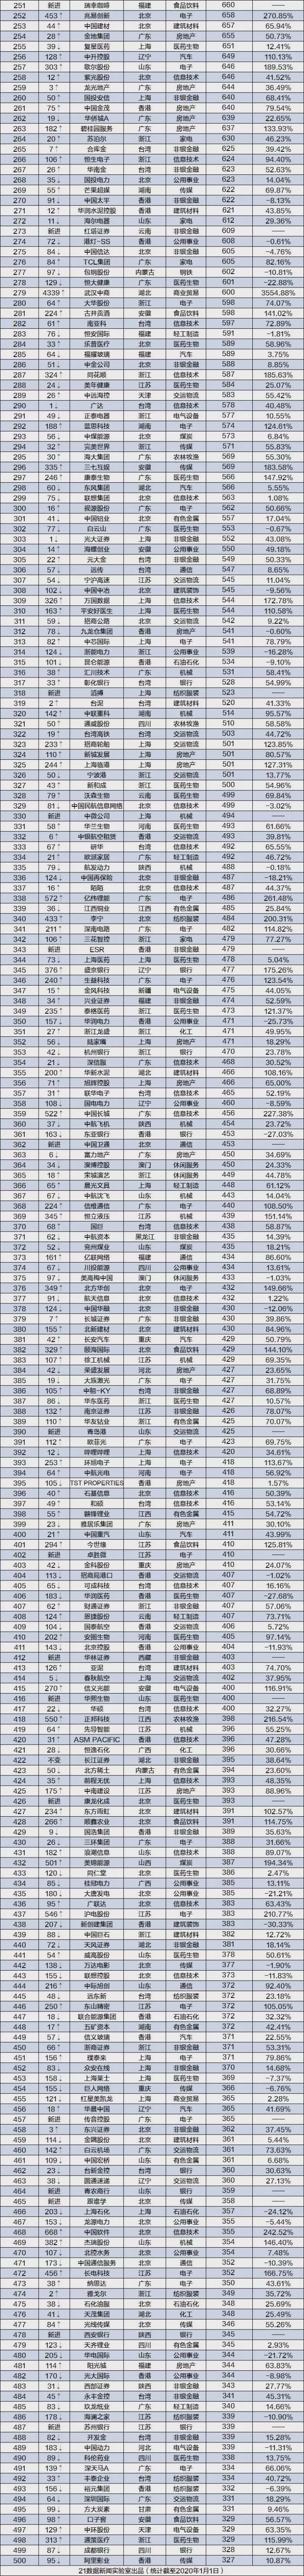 中国市值最高的公司排行榜 市值最高的中国上市公司500强榜单